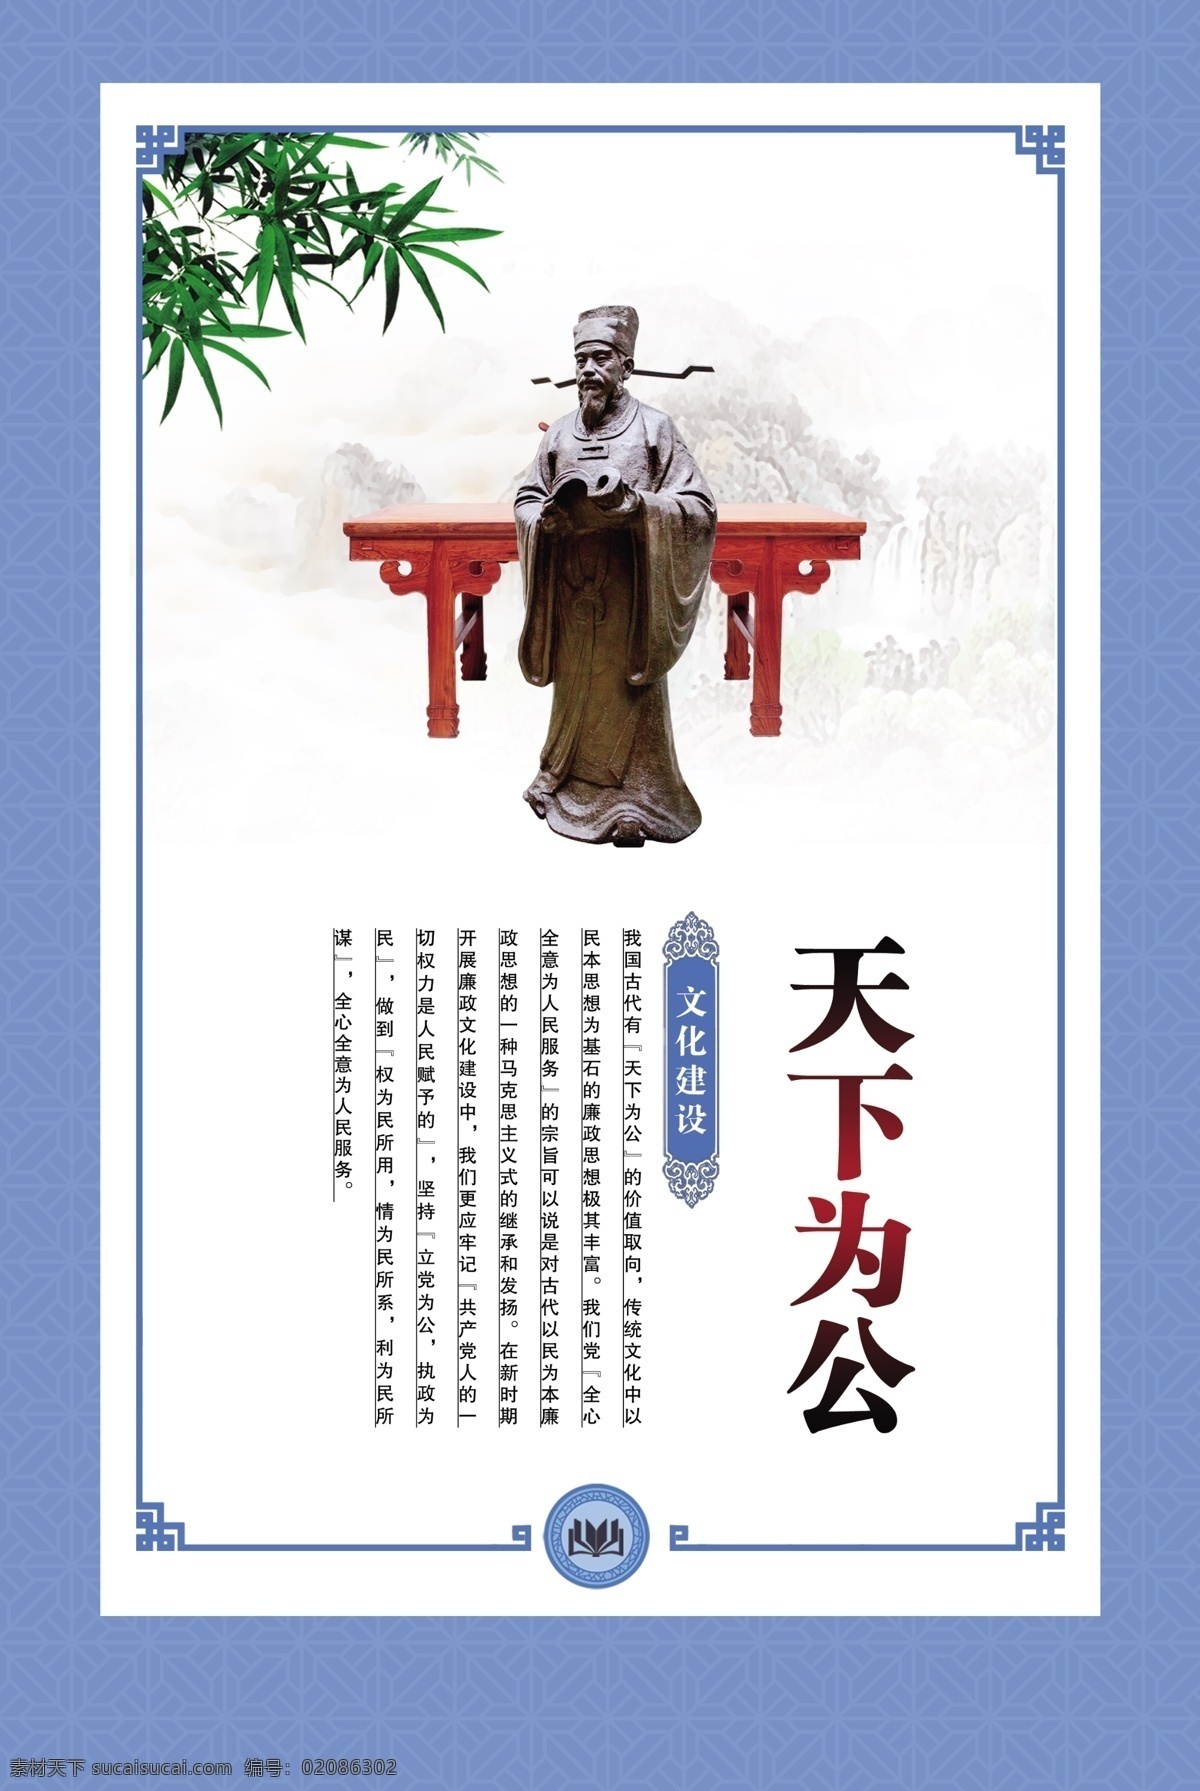 天下为公 企业文化 蓝色背景 中国风图版 法治 法律 肖像